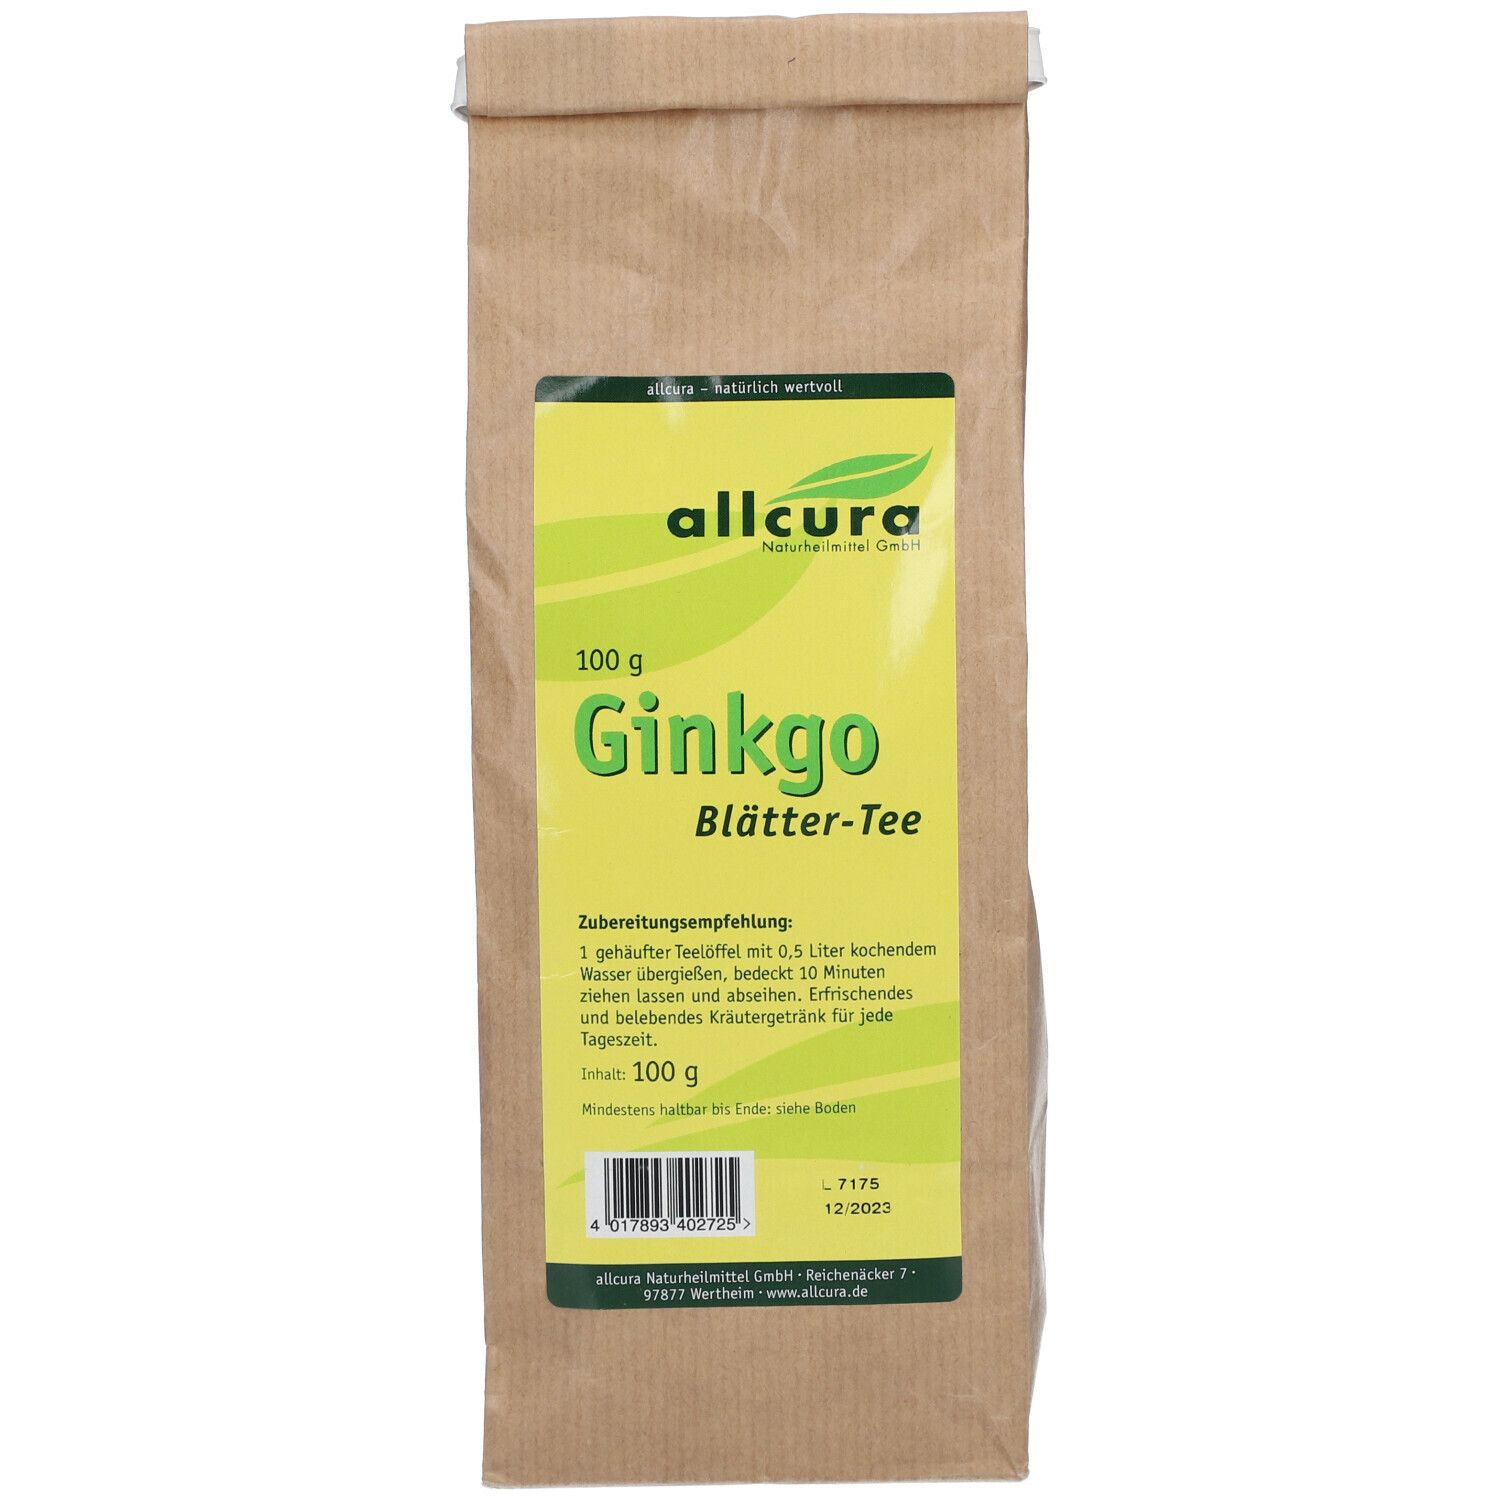 allcura Ginkgo Blätter-Tee